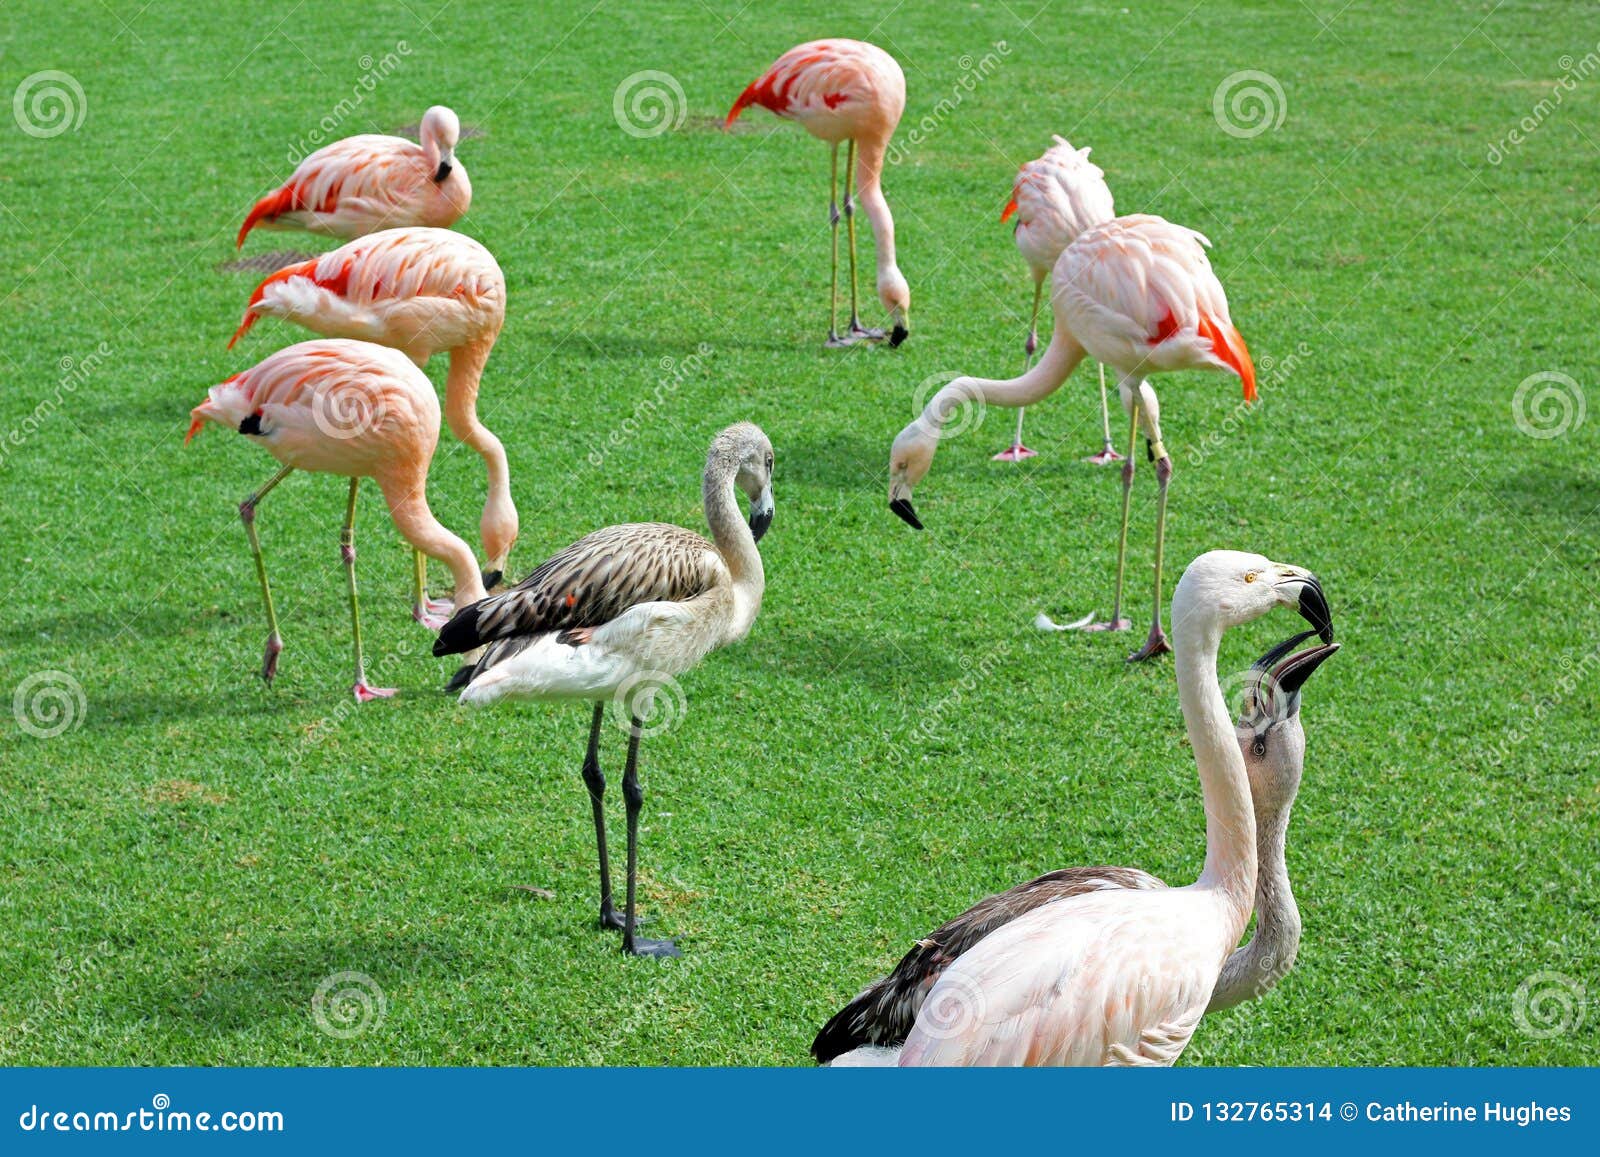 Een groep flamingo's op een gazon. Een groep die flamingo's voedsel op het gazon plukken Twee flamingo's in de voorgrond interracting met elkaar